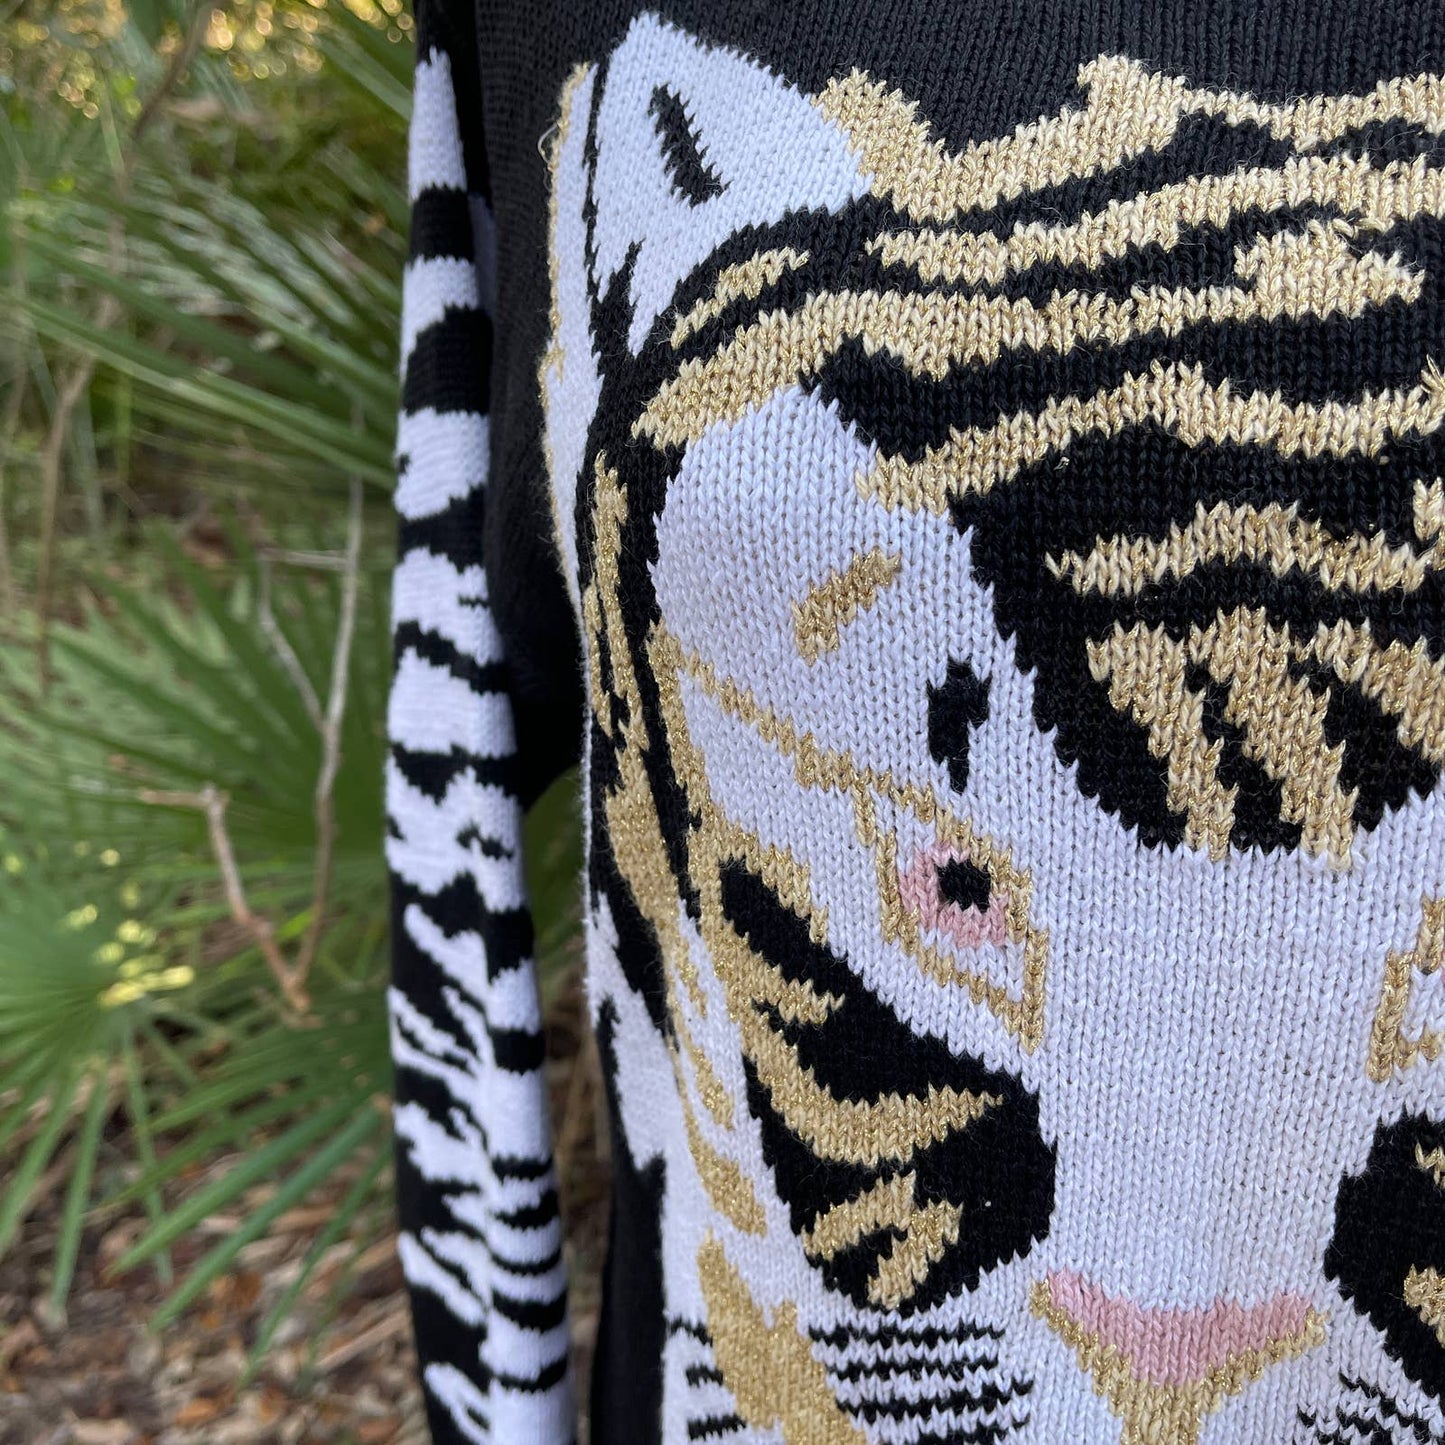 Cervelle Black White Gold Tiger Sweater Stripes Oversized 80s Vtg Size M